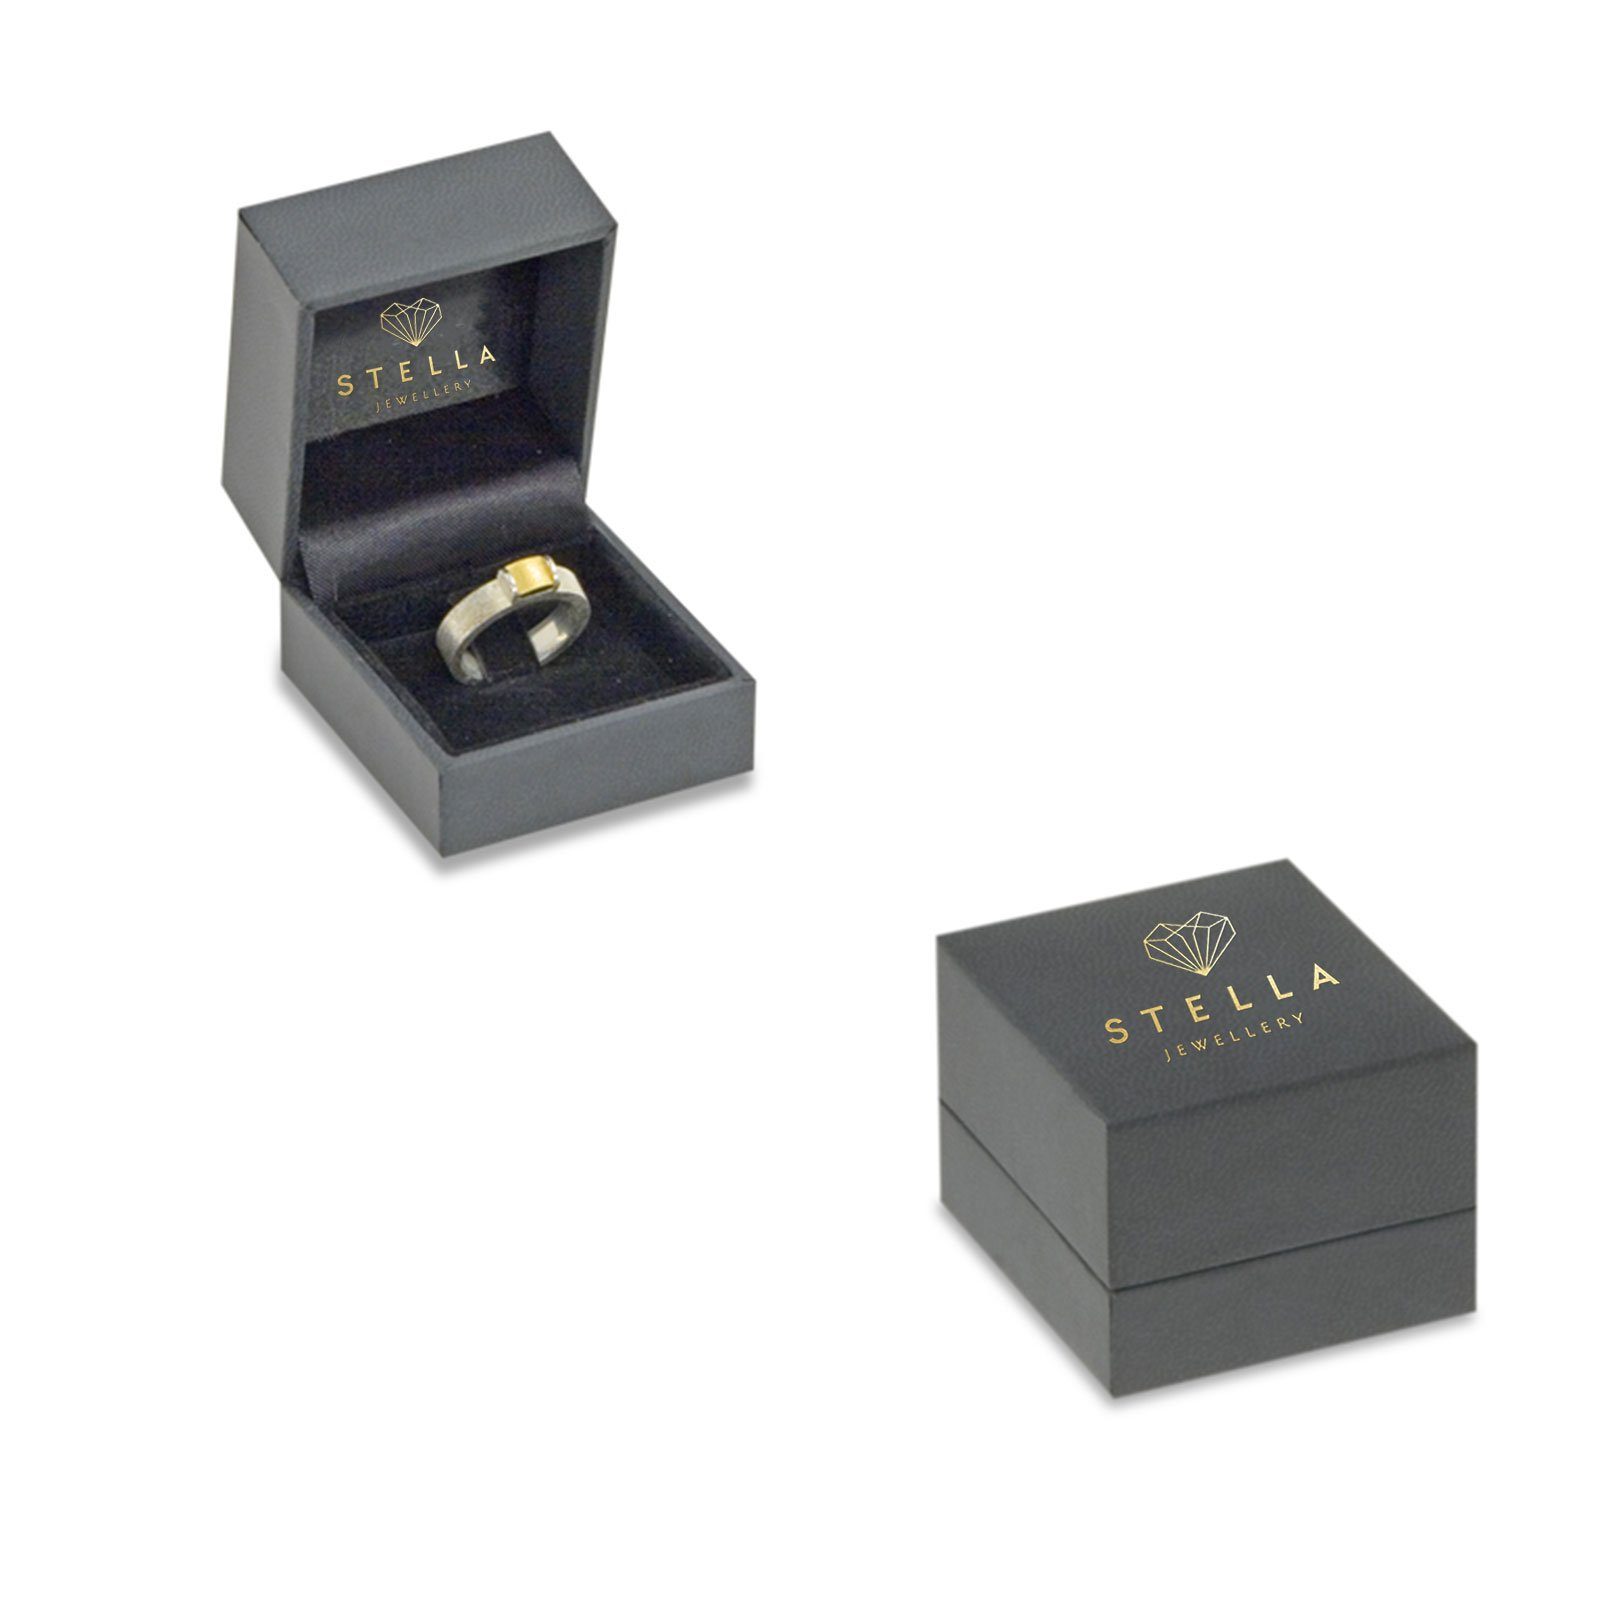 SZ54 mit Stella-Jewellery - 0,25ct. Weißgold Verlobungsring Brillant 0,05ct. Poliert Etui), Diamant (inkl. 585er Solitärring